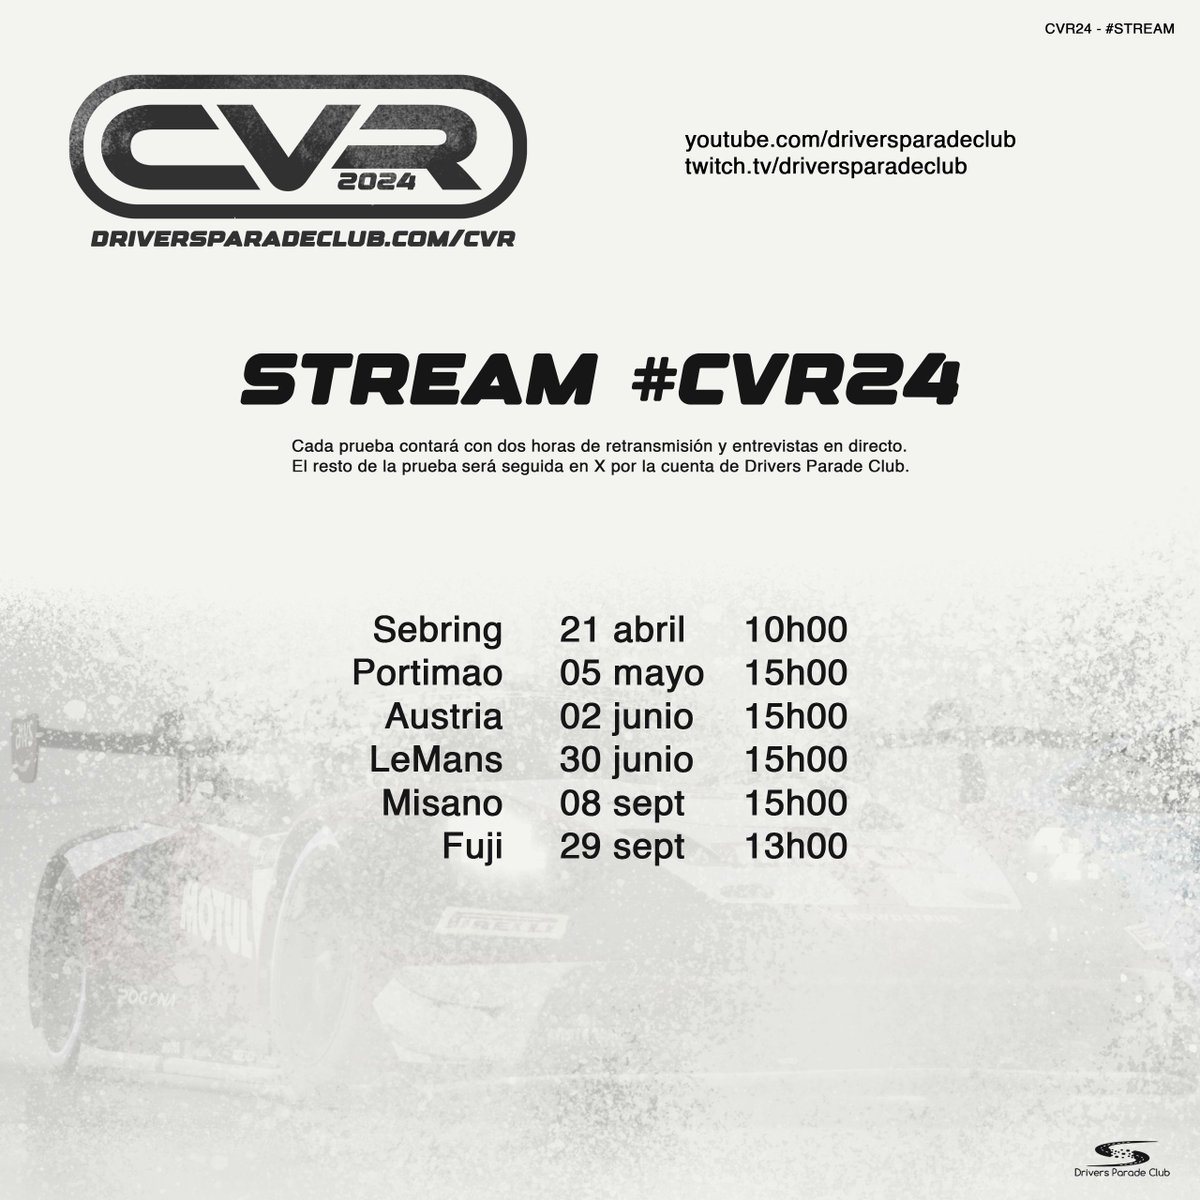 El #CVR24 contará con streaming parcial de cada prueba los domingos. Se emitirán dos horas de cada prueba en twitch y youtube -el resto del seguimiento en X- e invitaremos a participantes y responsables de los equipos a acompañarnos en cabina.